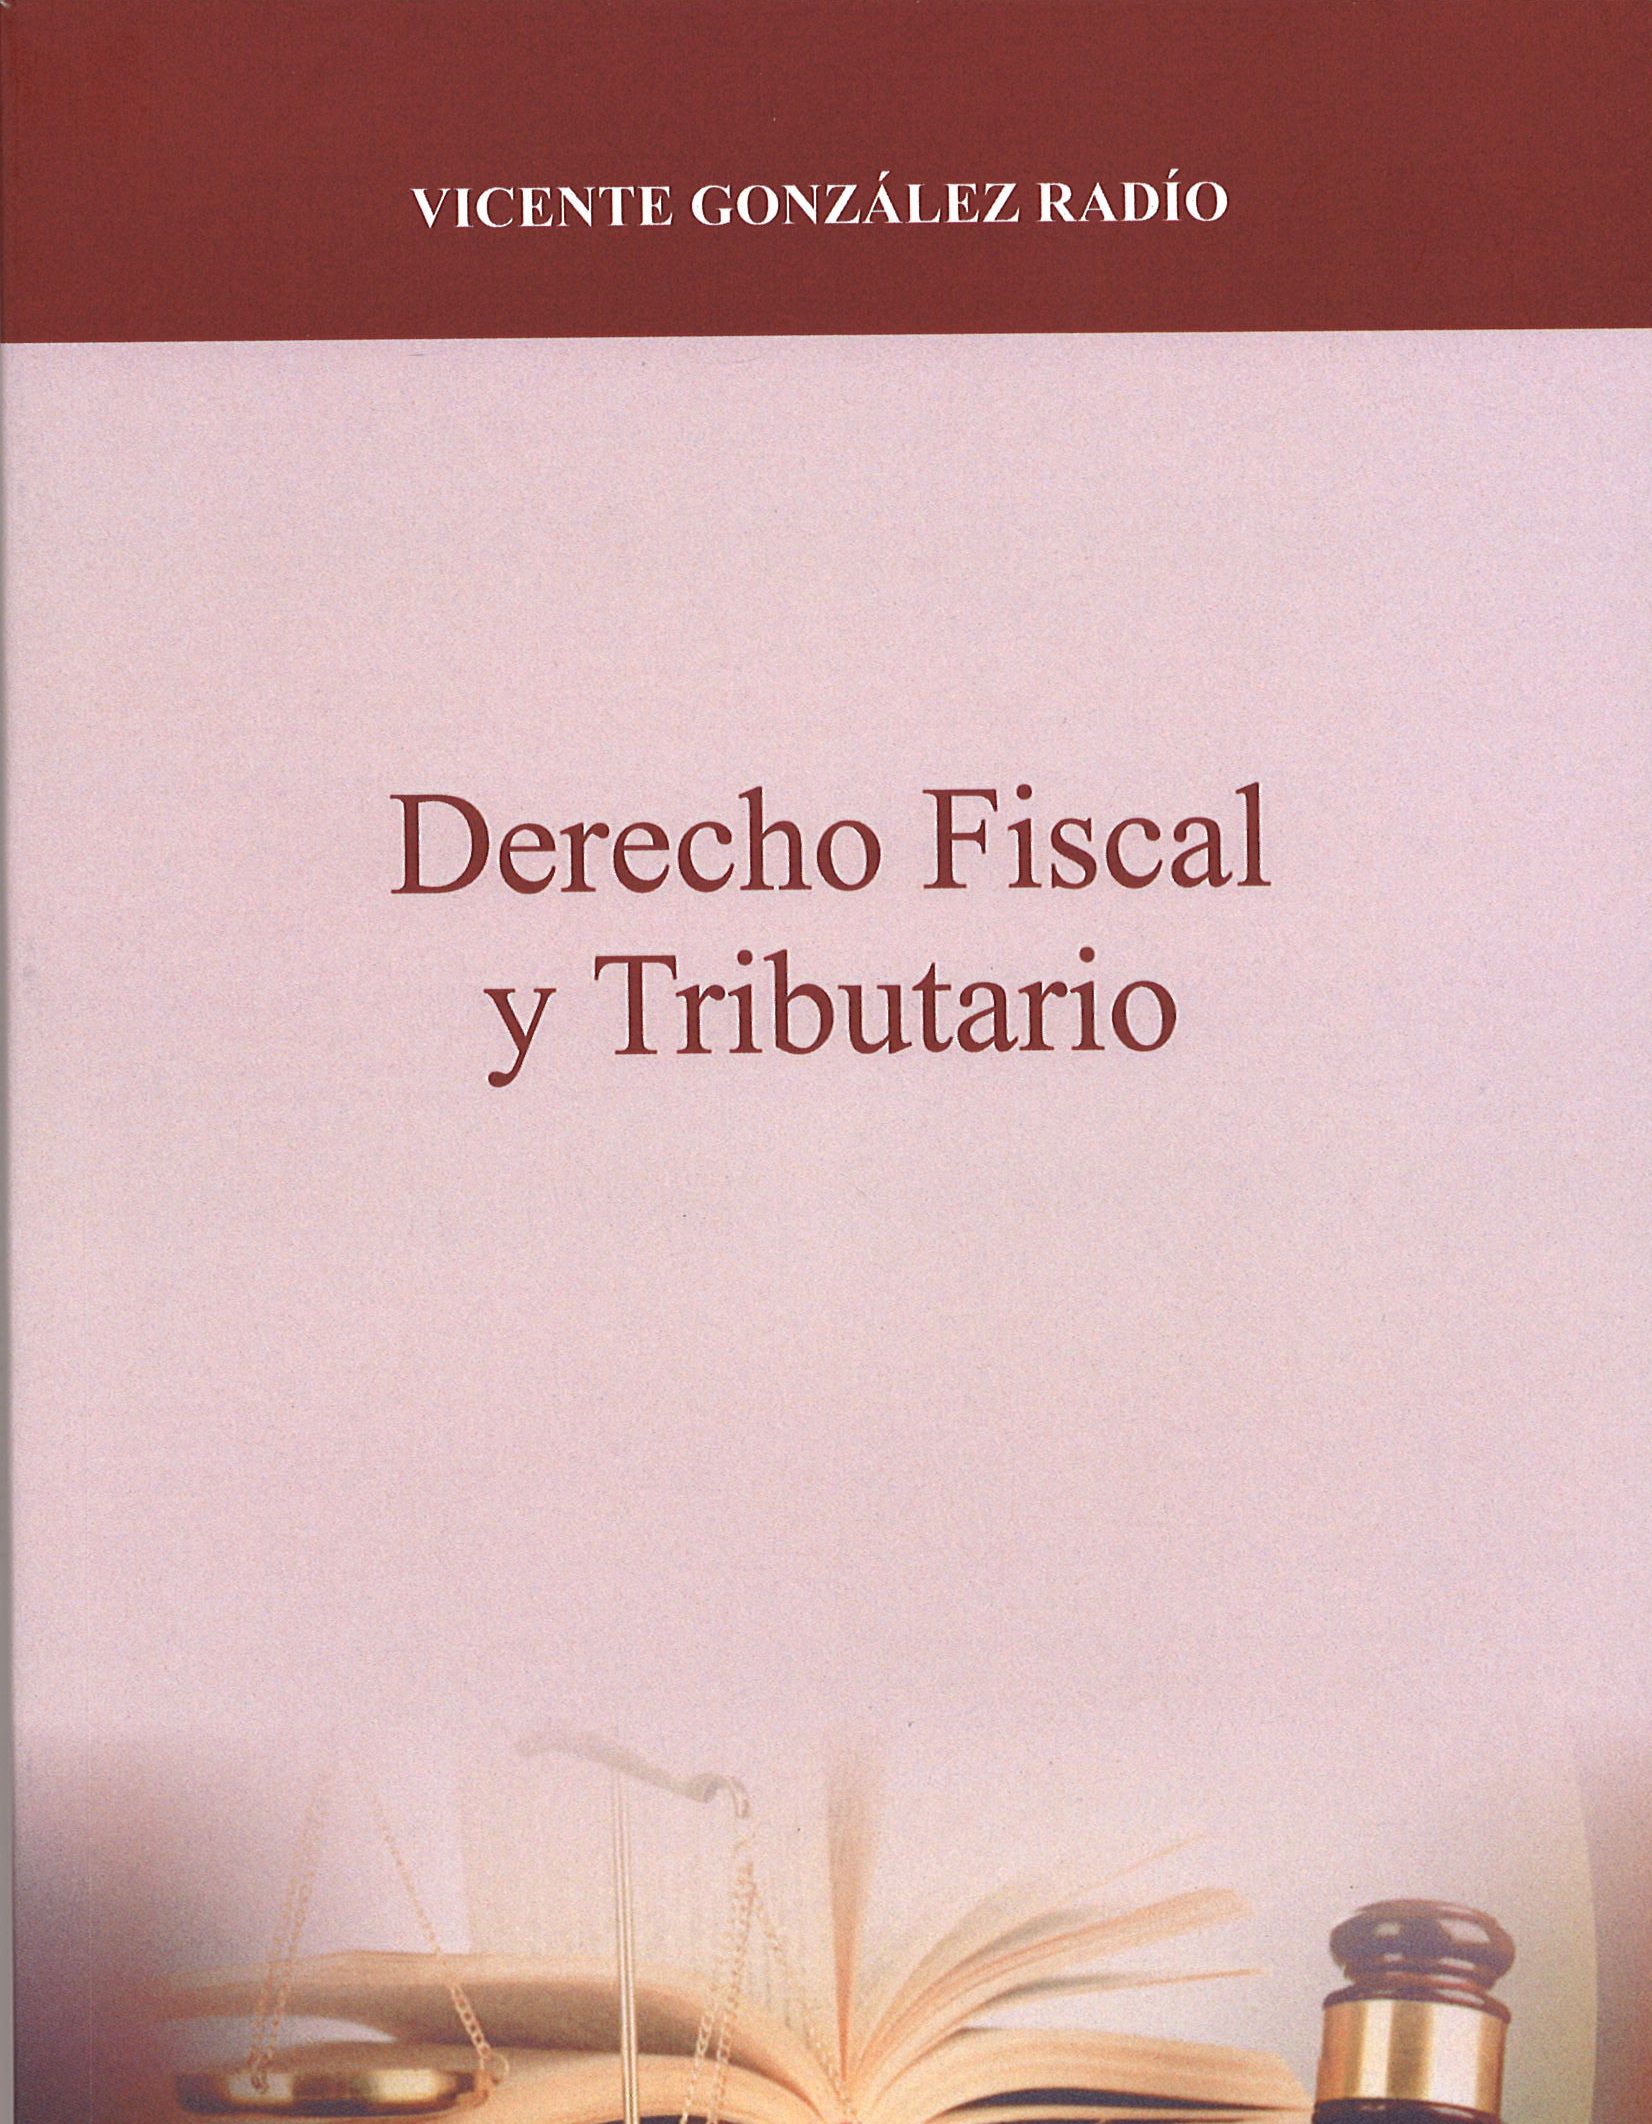 Imagen de portada del libro Derecho fiscal y tributario